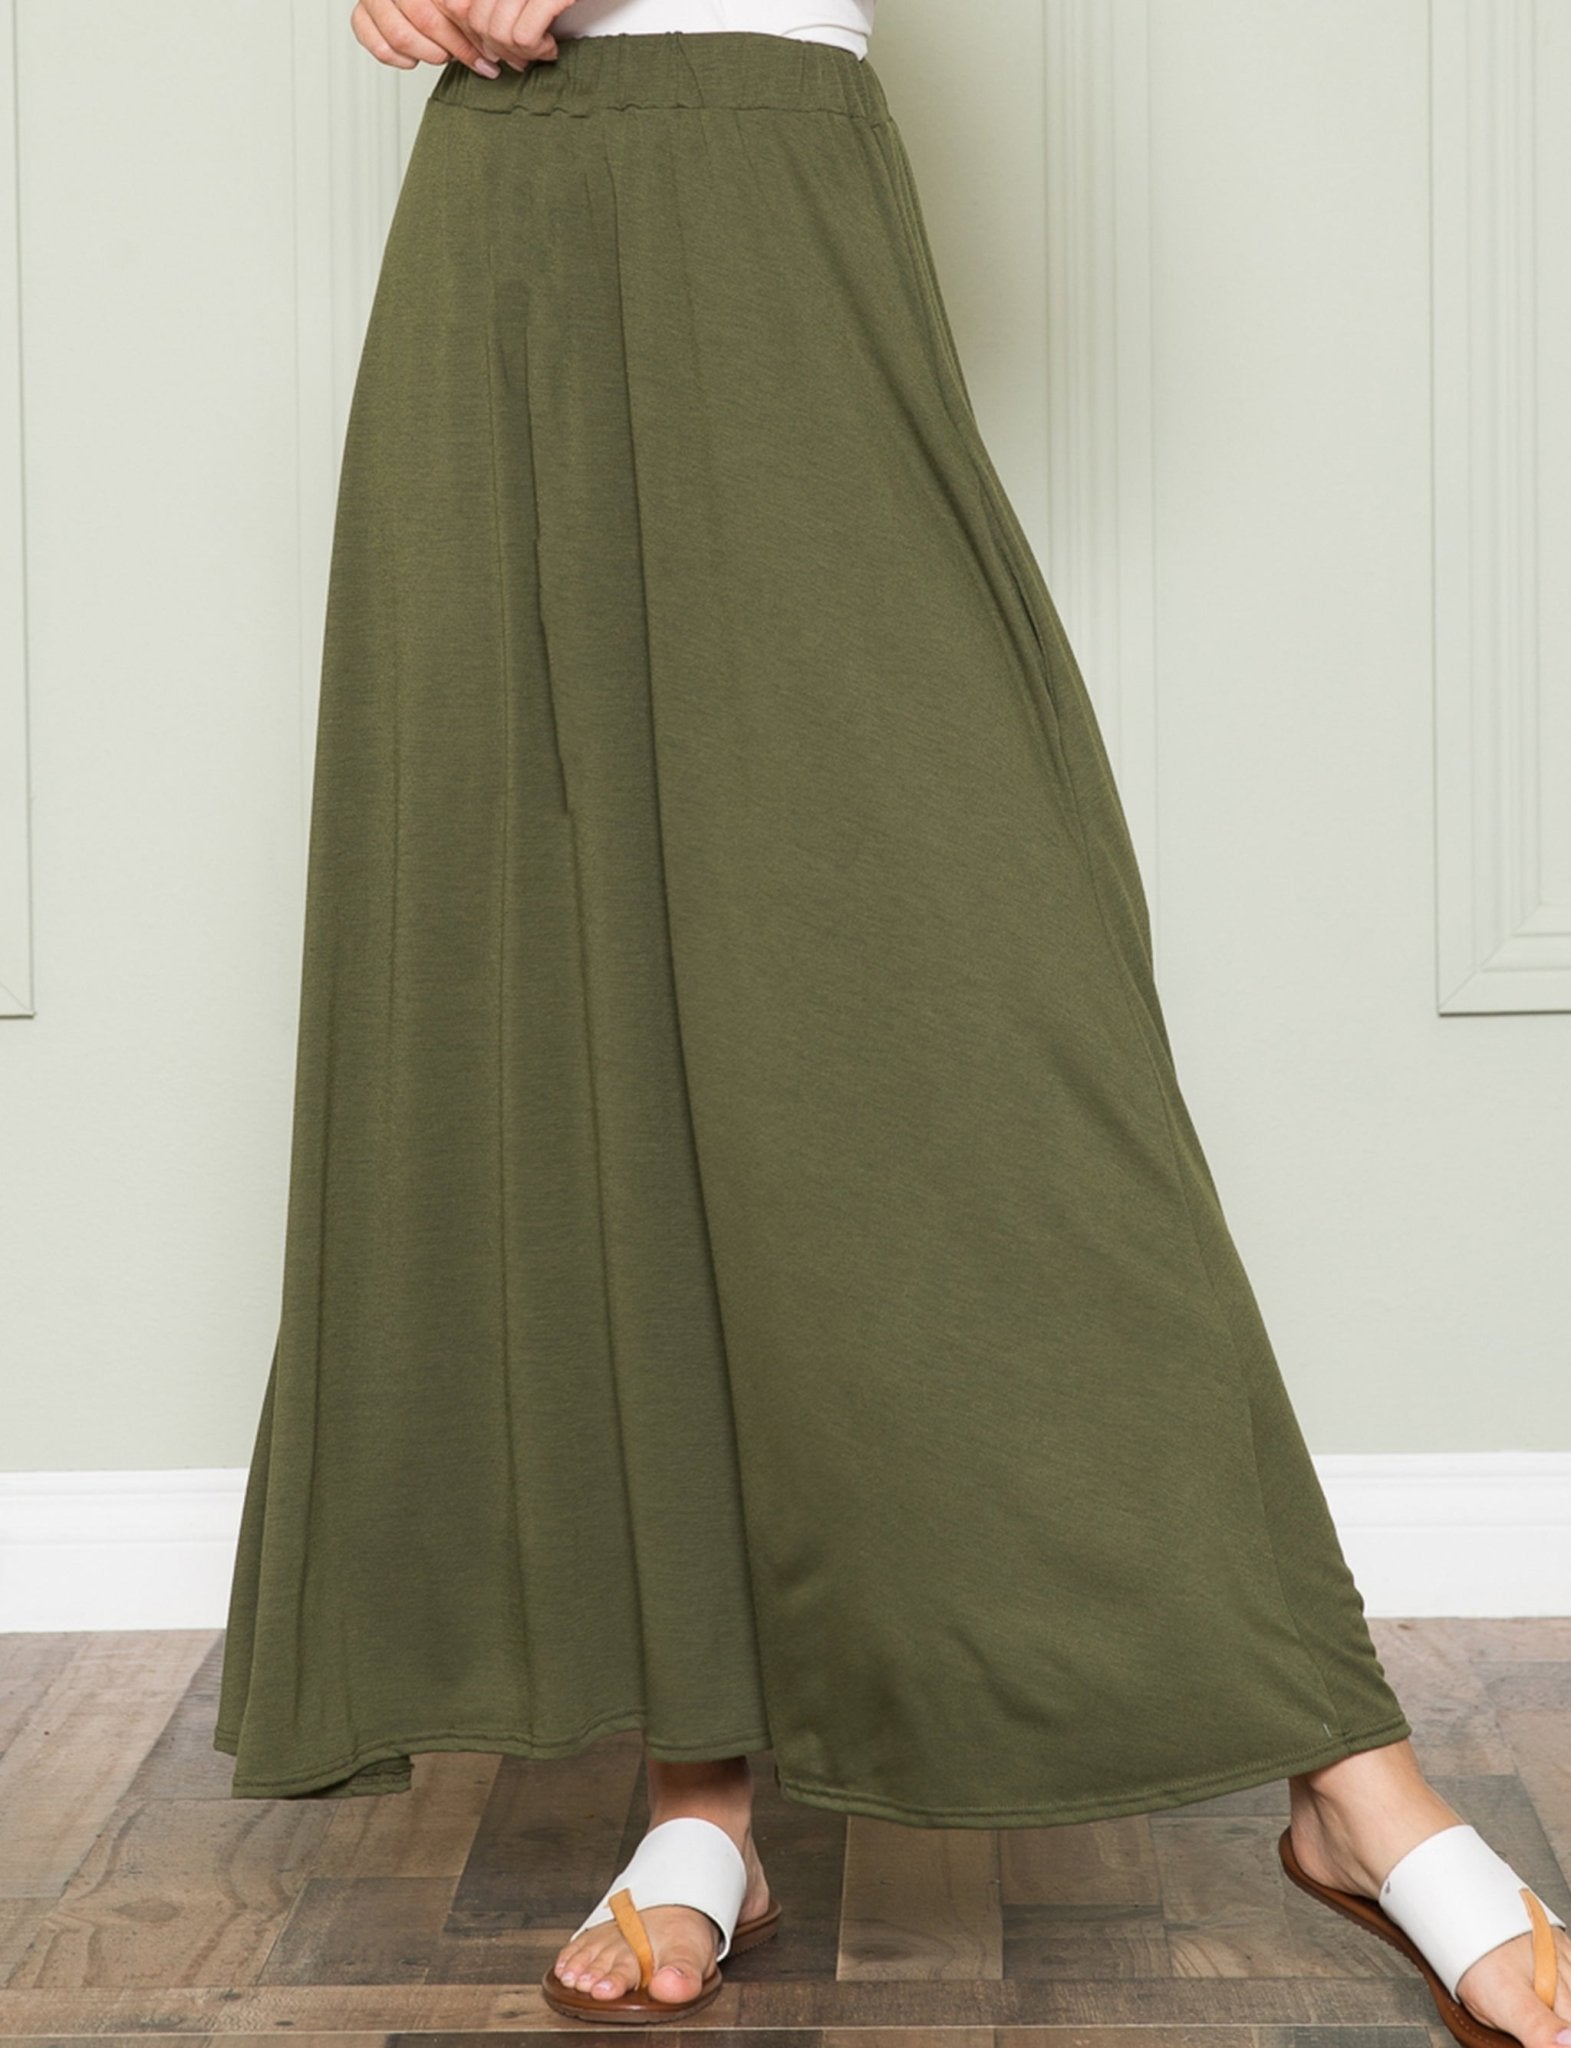 Flowy Maxi Skirts With Pocket - DressbarnSkirts